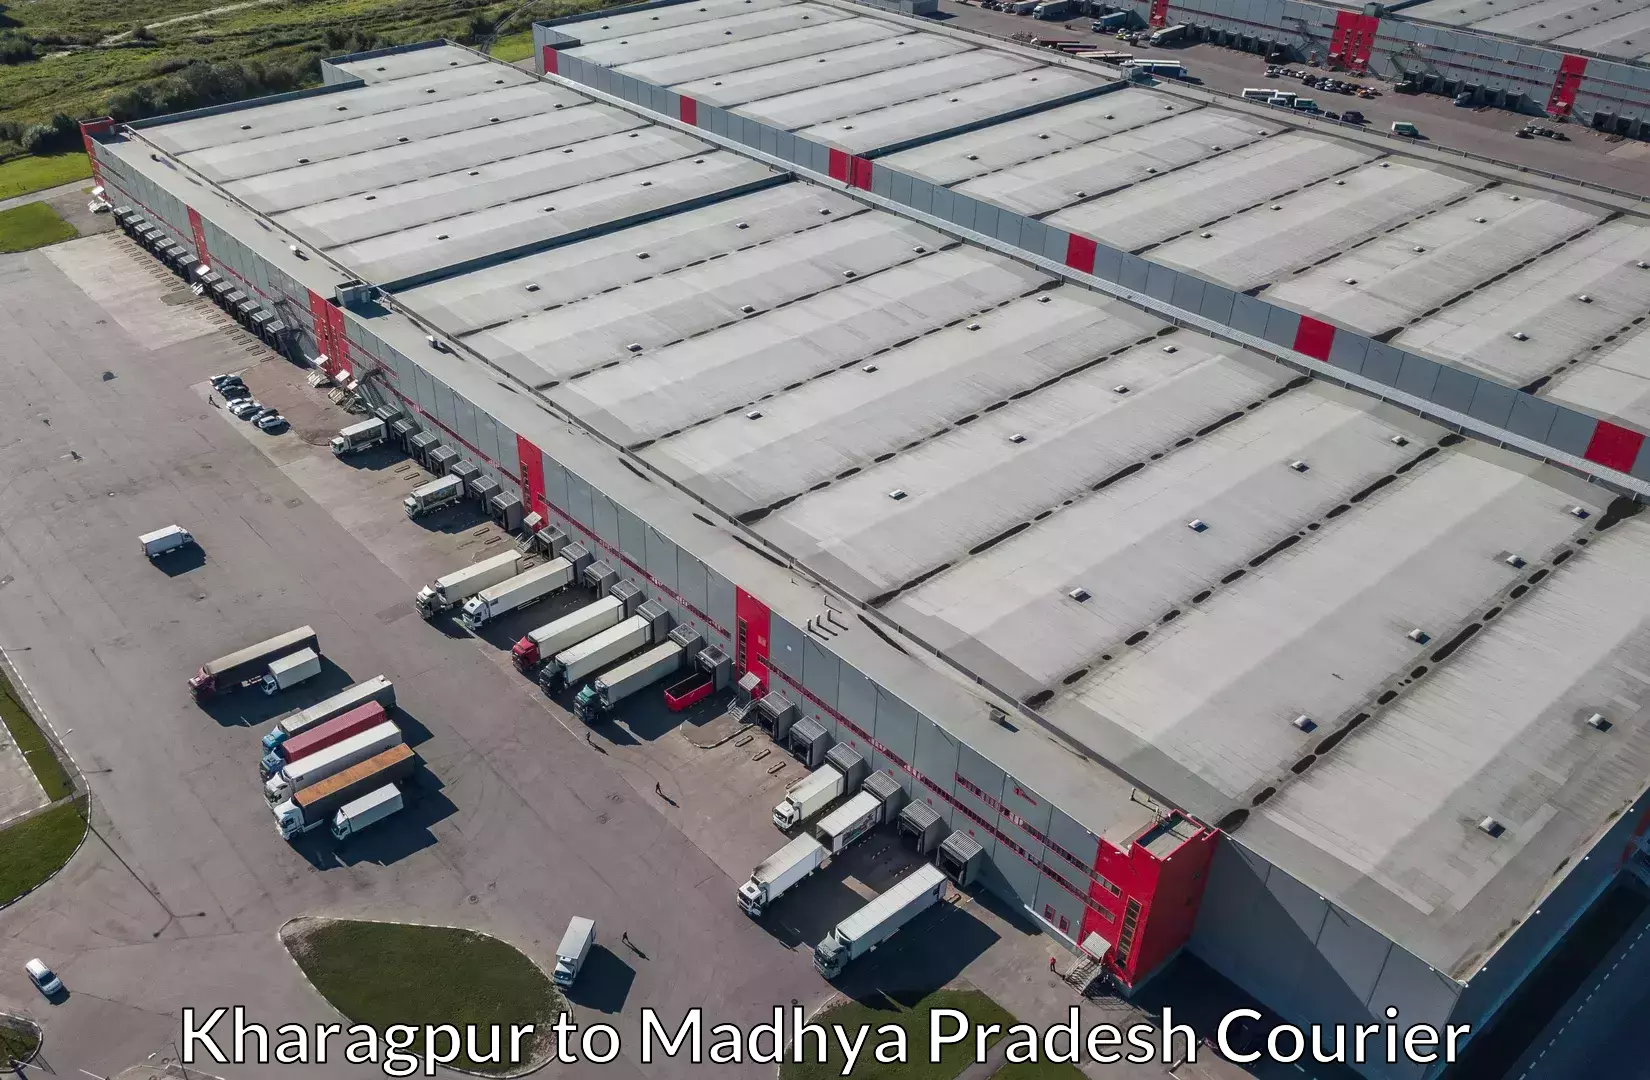 Baggage shipping experts Kharagpur to Bhind